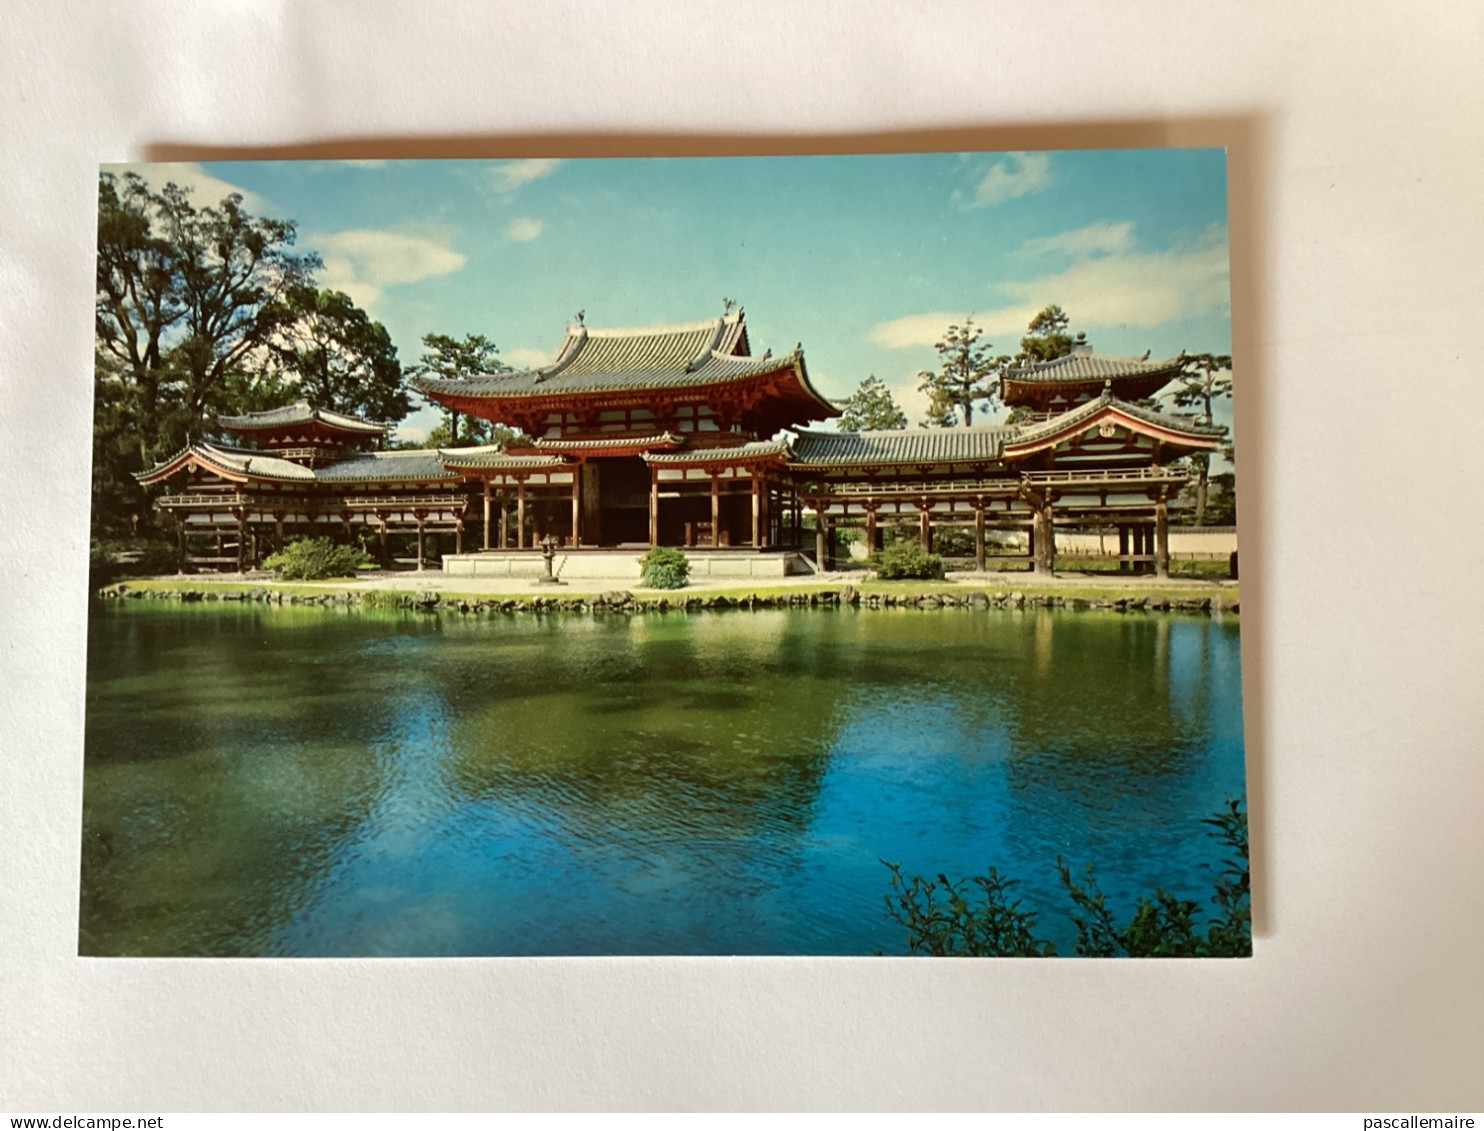 8 cartes postales Kyoto année 1960